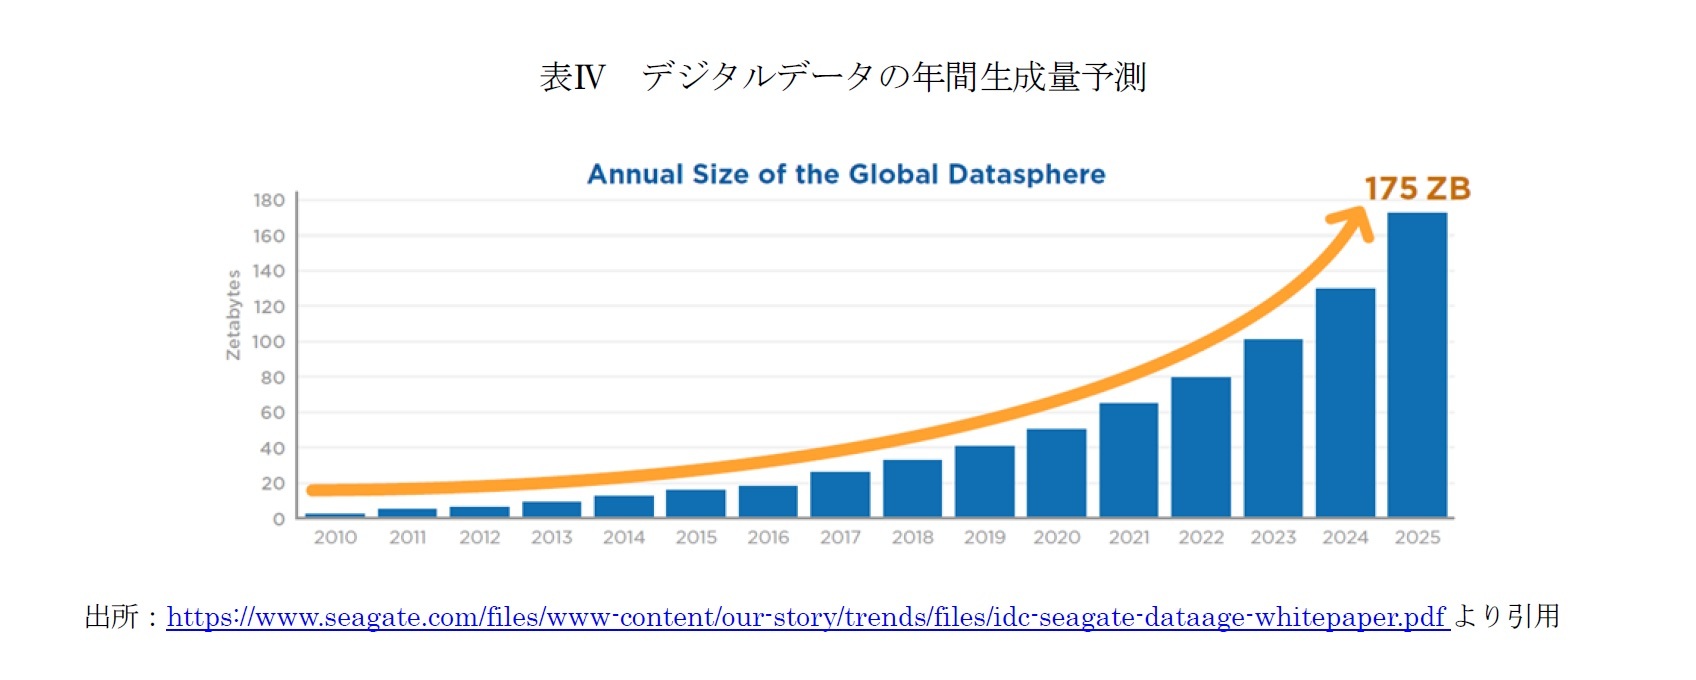 表Ⅳ デジタルデータの年間生成量予測